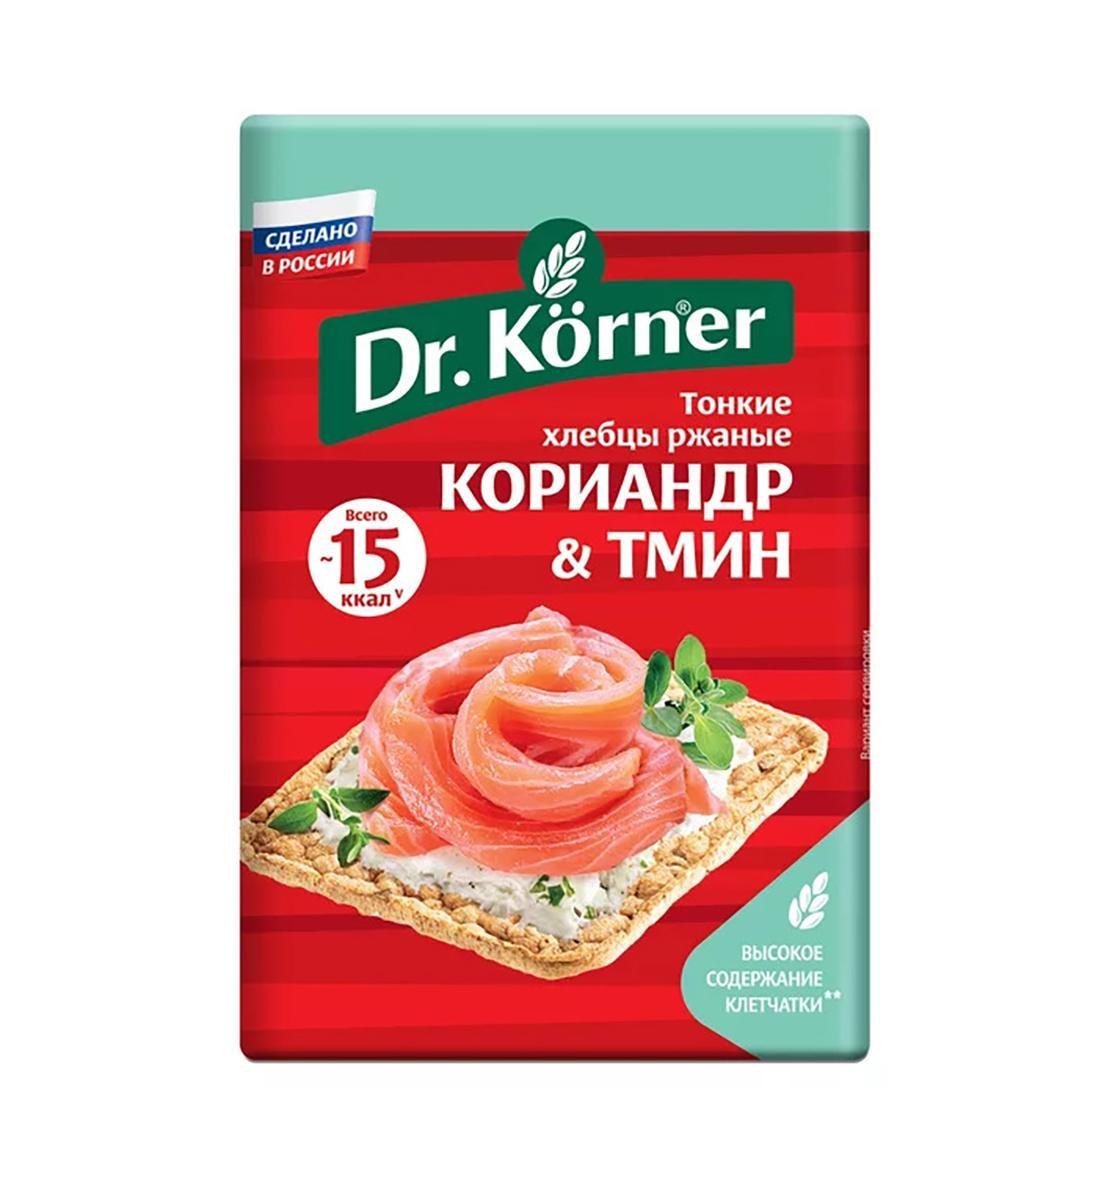 Хлебцы Dr. Korner хрустящие ржаные с кориандром и тмином 100 гр., флоу-пак